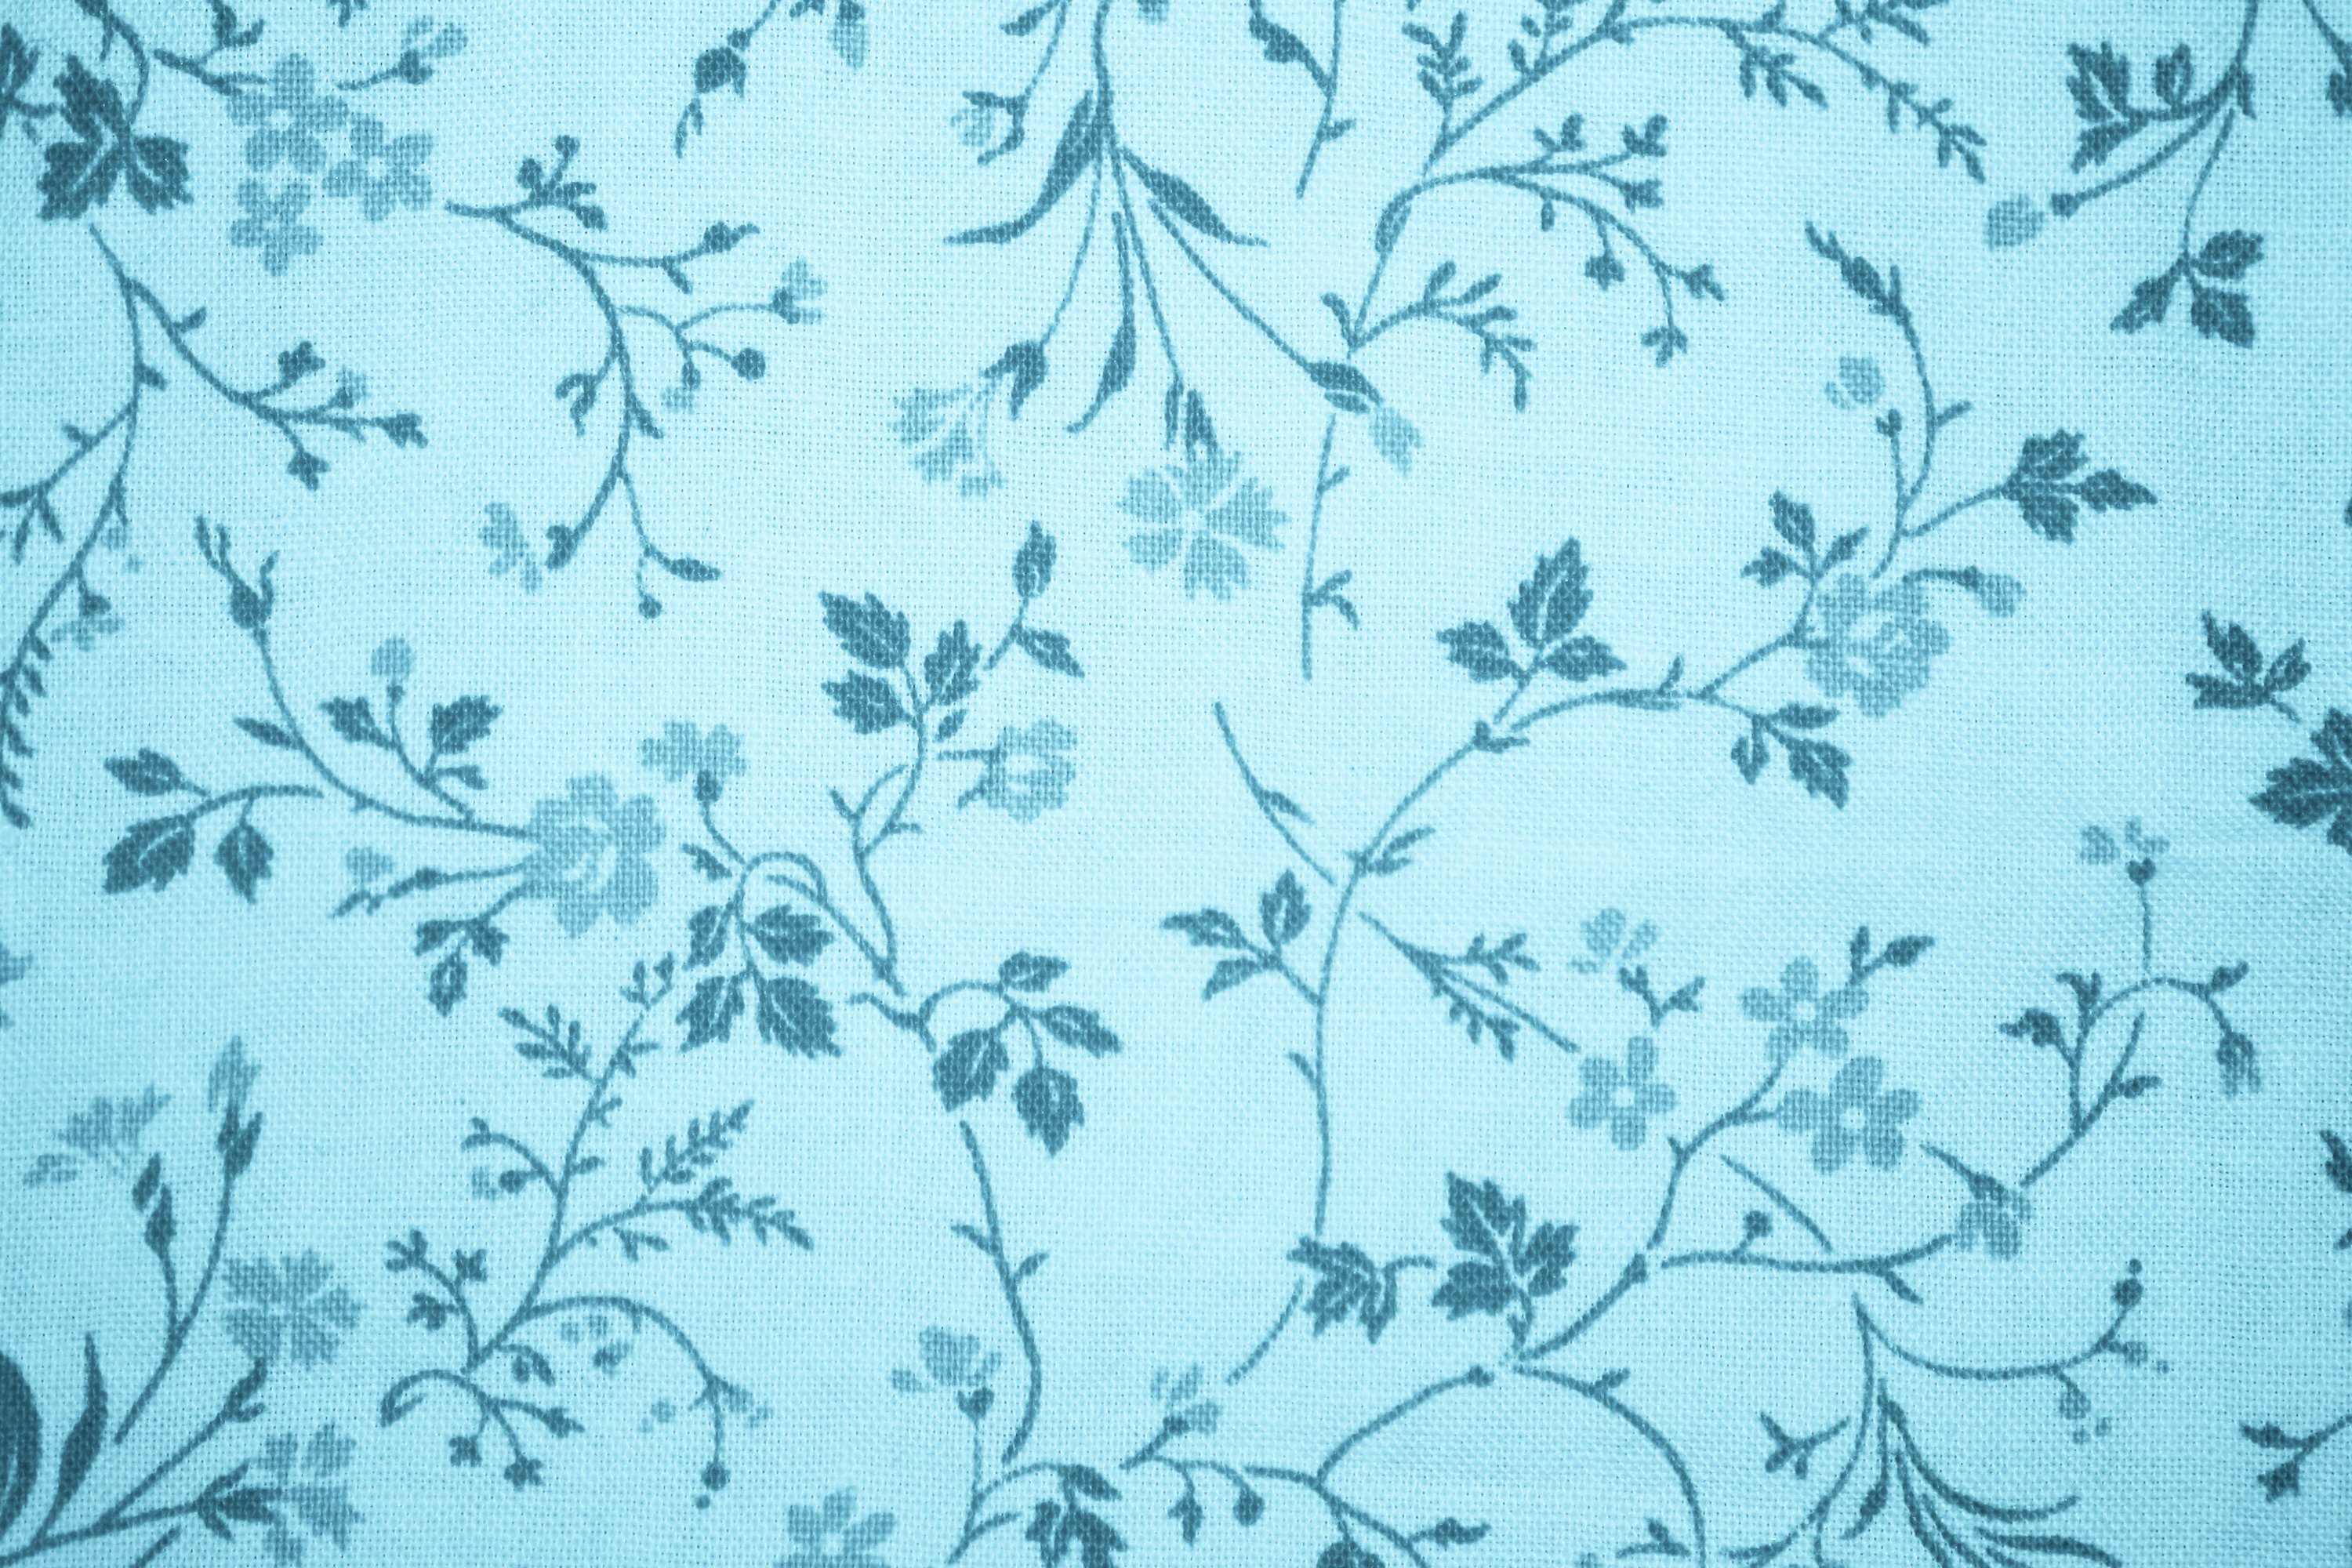 Light Blue Floral Print Fabric Texture Picture | Free Photograph | Photos  Public Domain